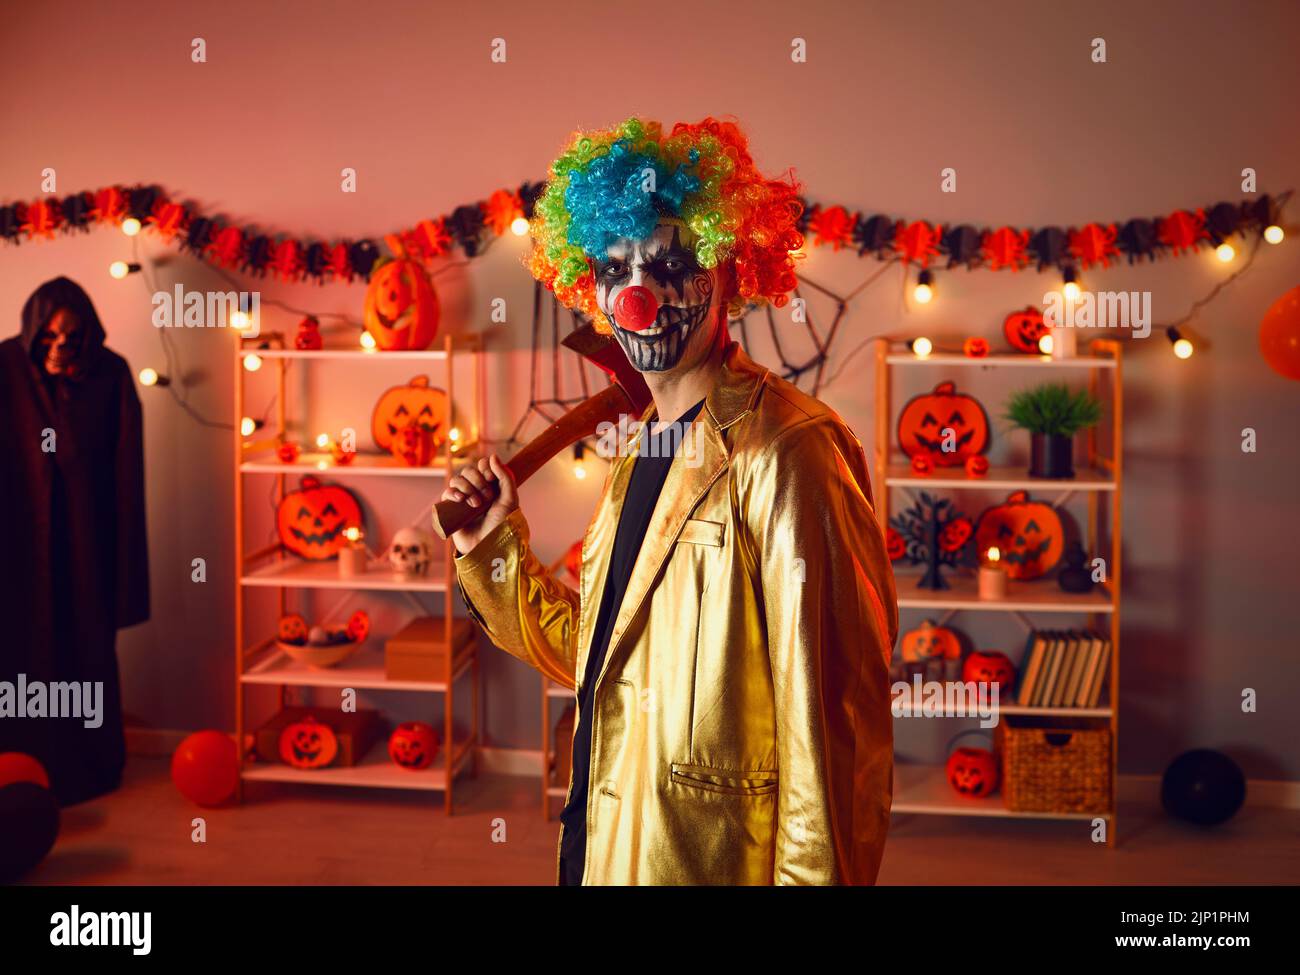 Mann Clown feiern Halloween in dekorierten Hause Stockfoto